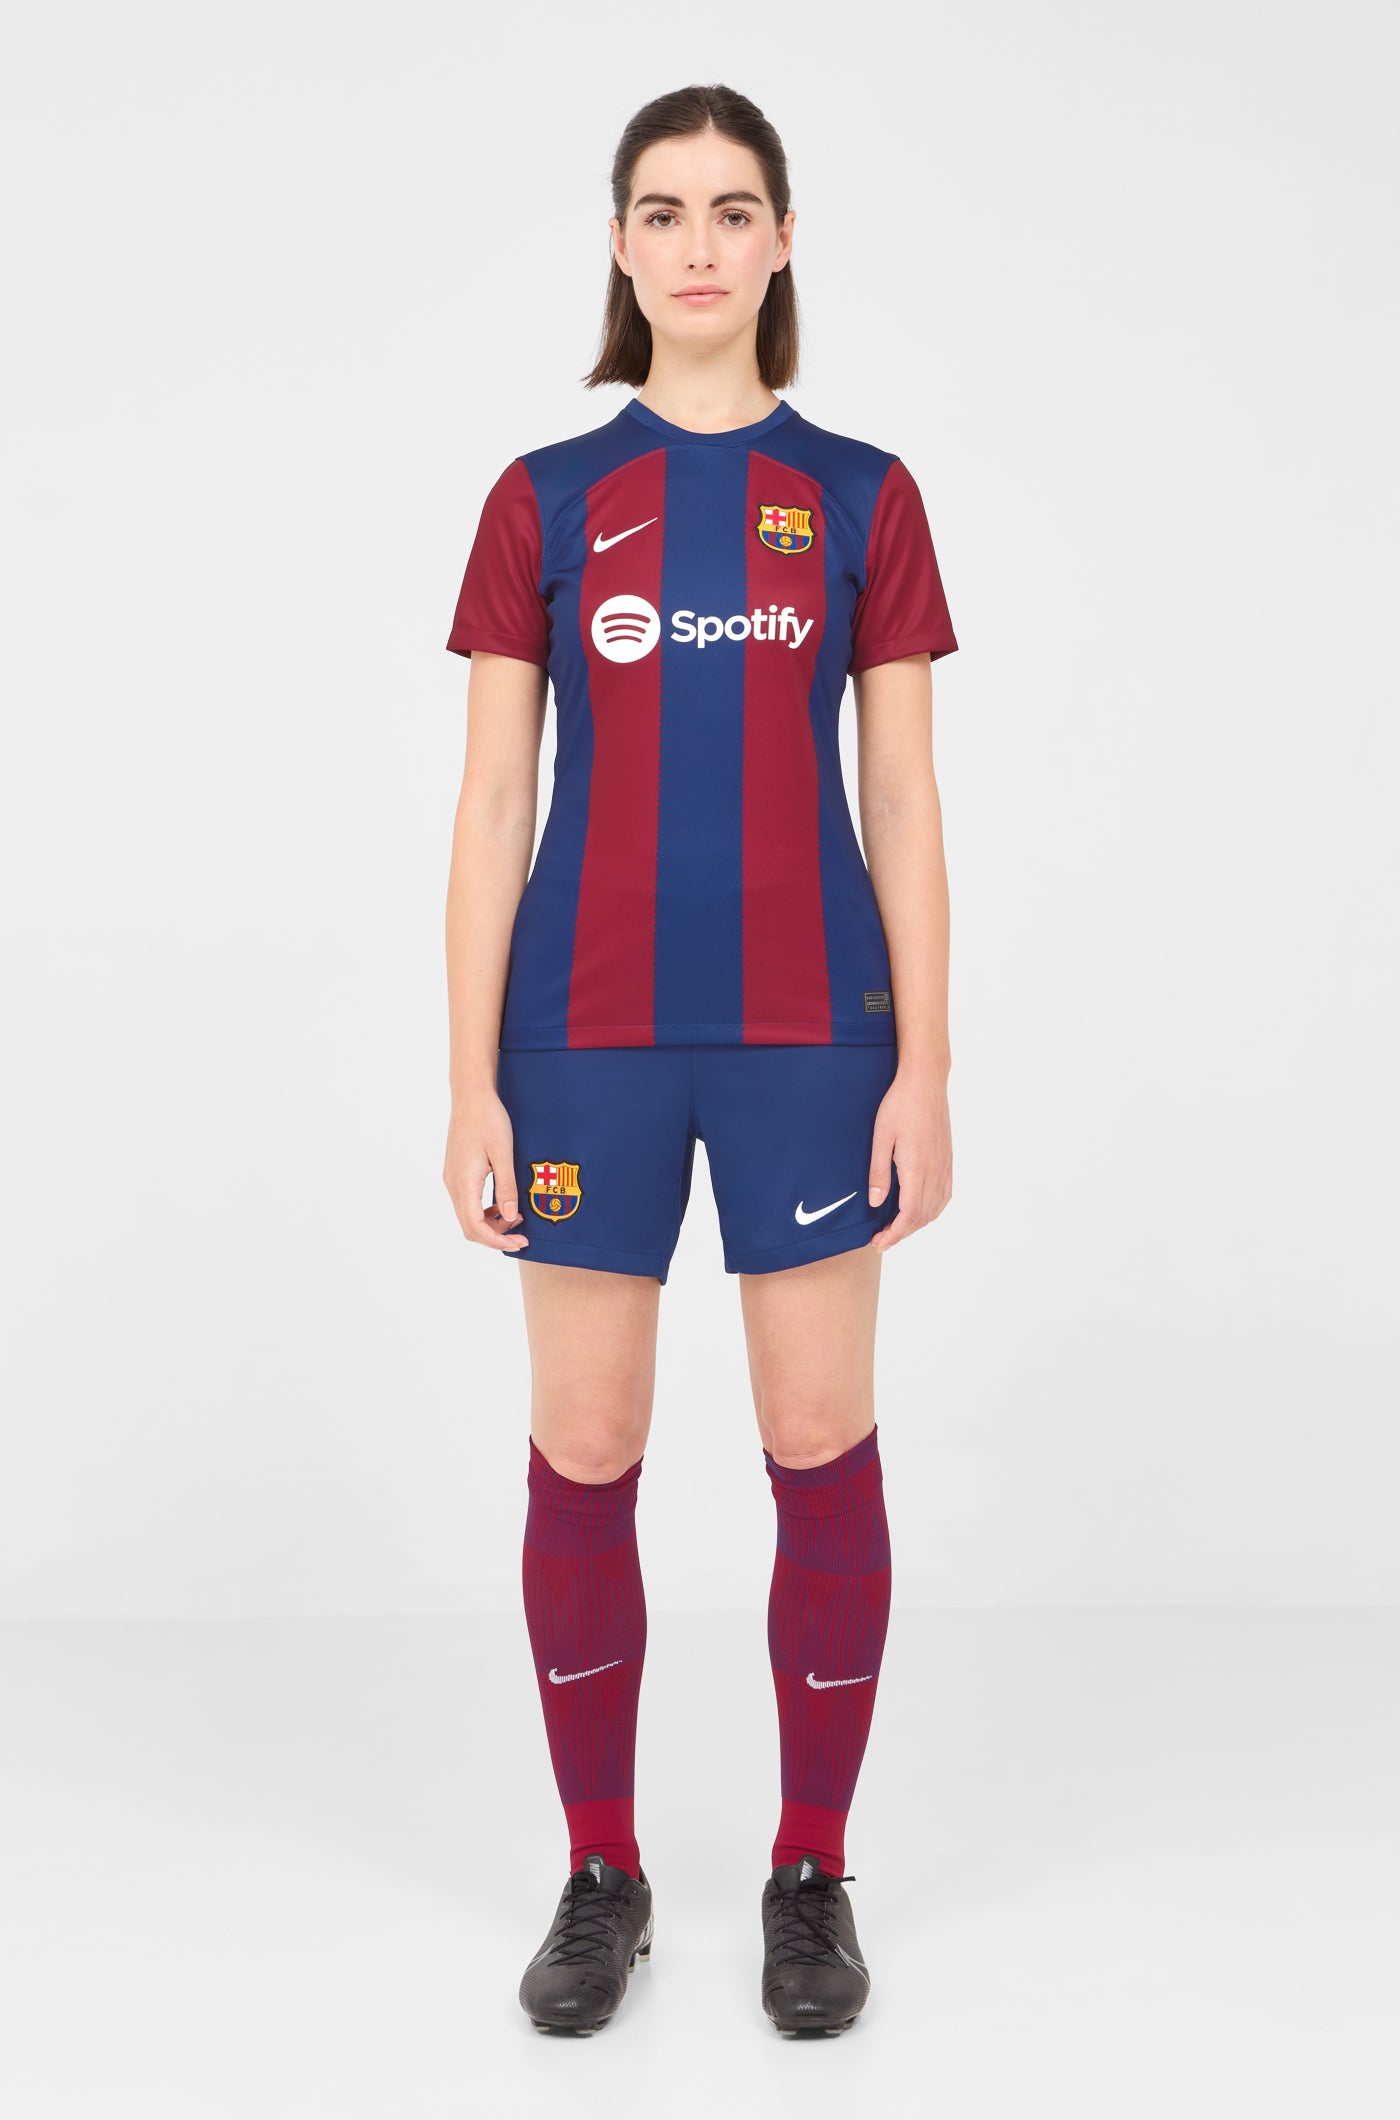 Camiseta Personalizable Fc Barcelona Producto Licenciado 1ª Equipación 23-24